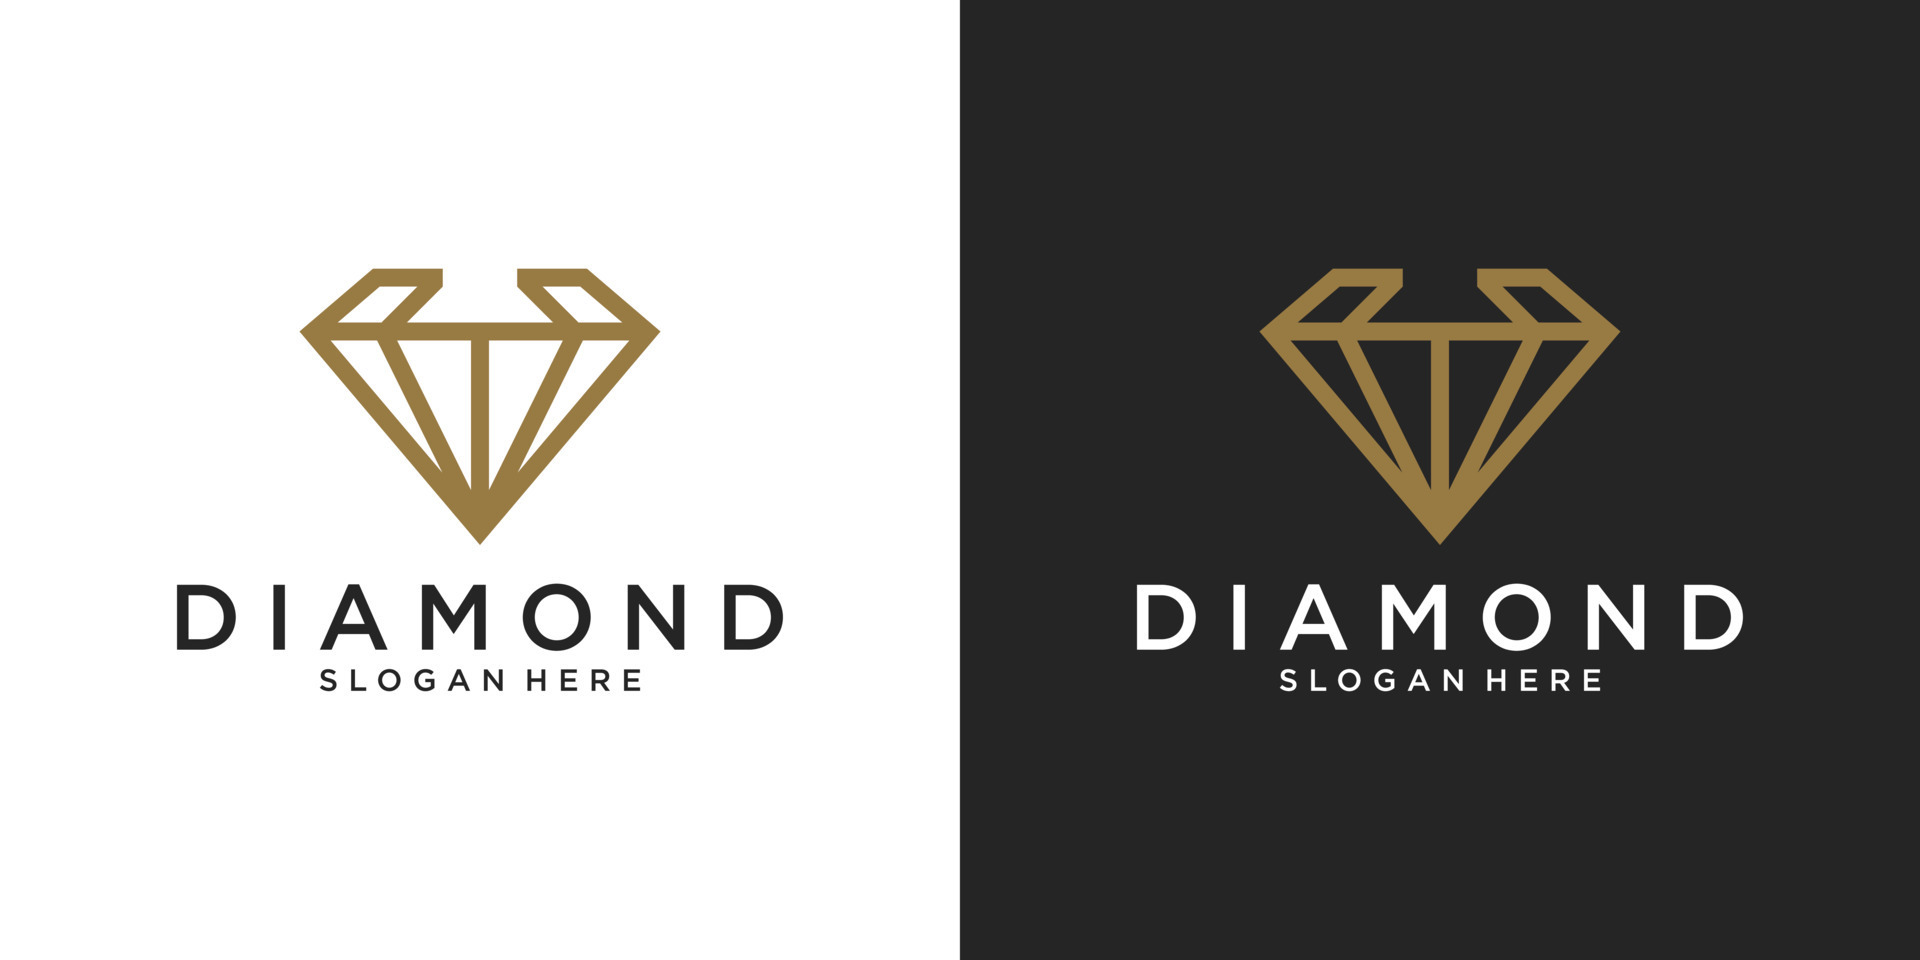 Creative Diamond Concept Logo Design Template. 8390615 Vector Art at ...